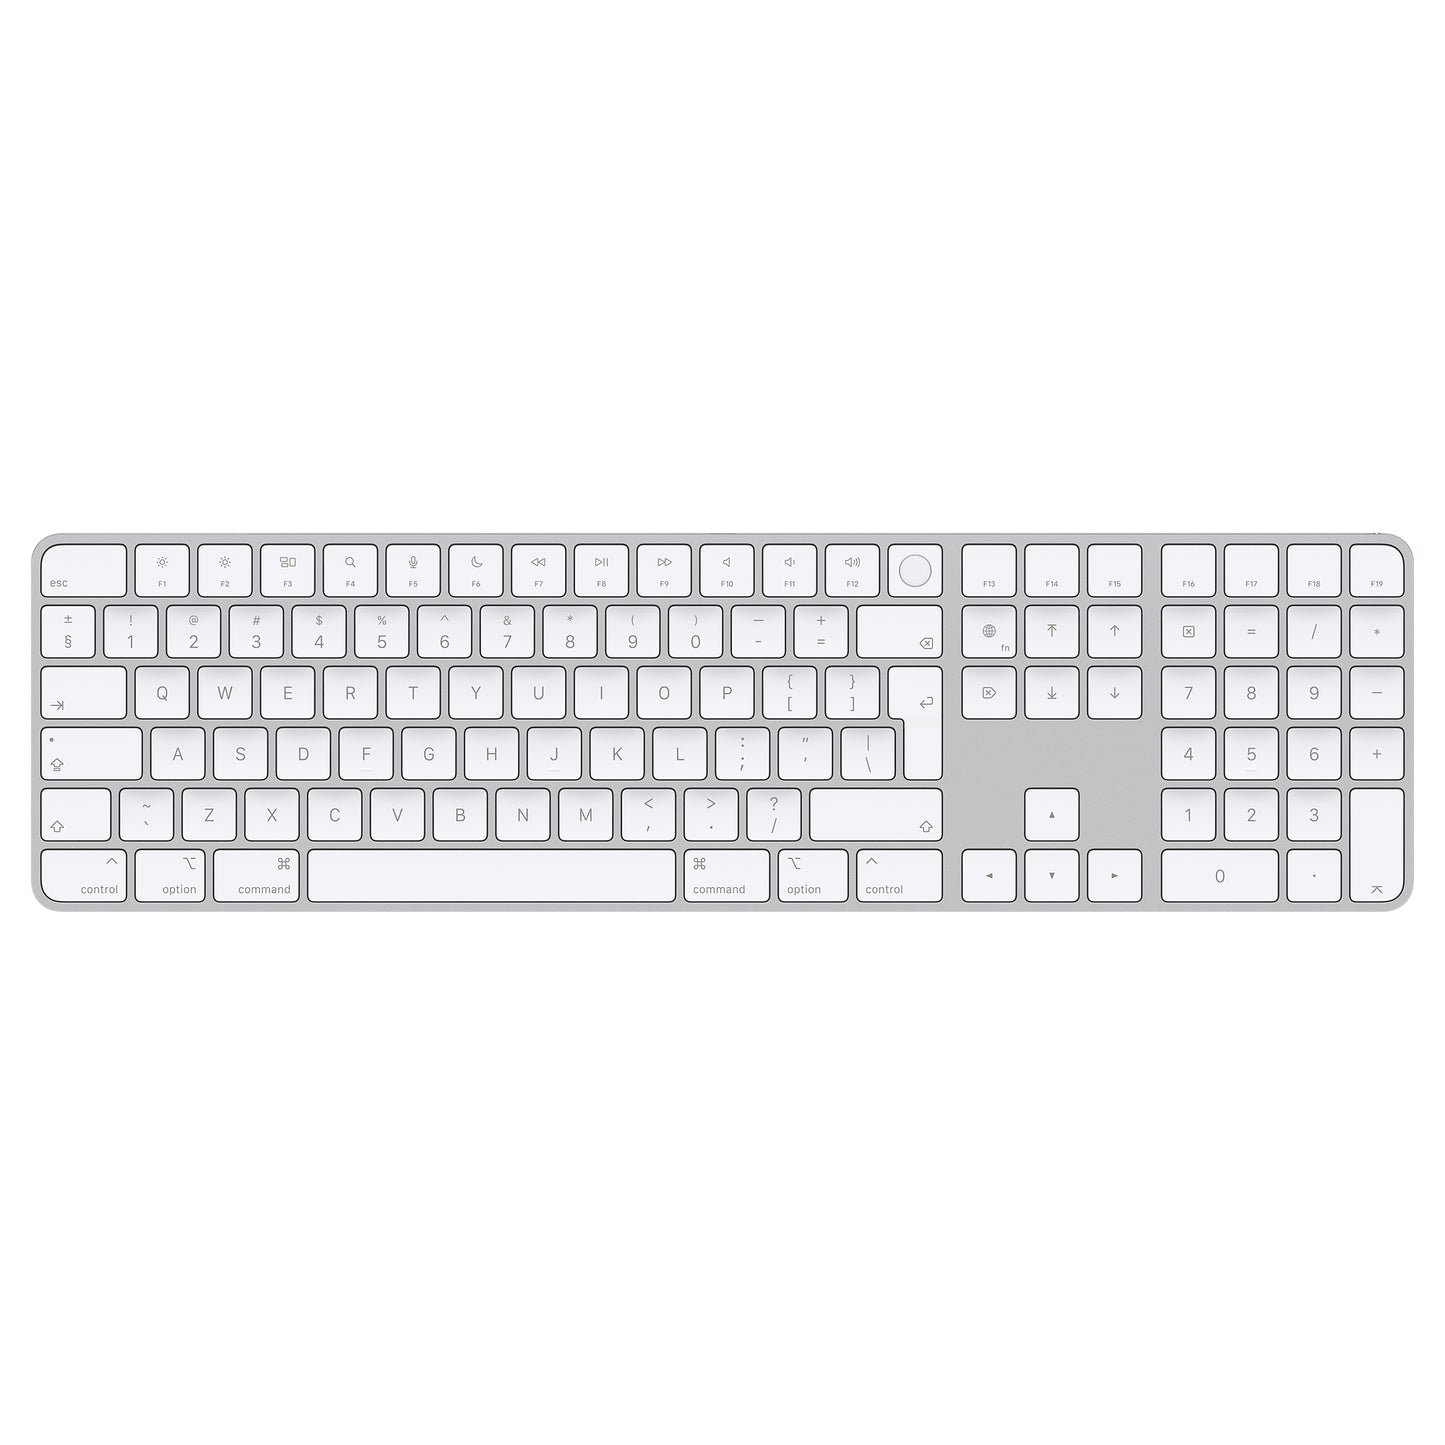 لوحة مفاتيح ماجيك مع Touch ID و Numeric Keypad لأجهزة كمبيوتر Mac مع سيليكون Apple - انجليزي